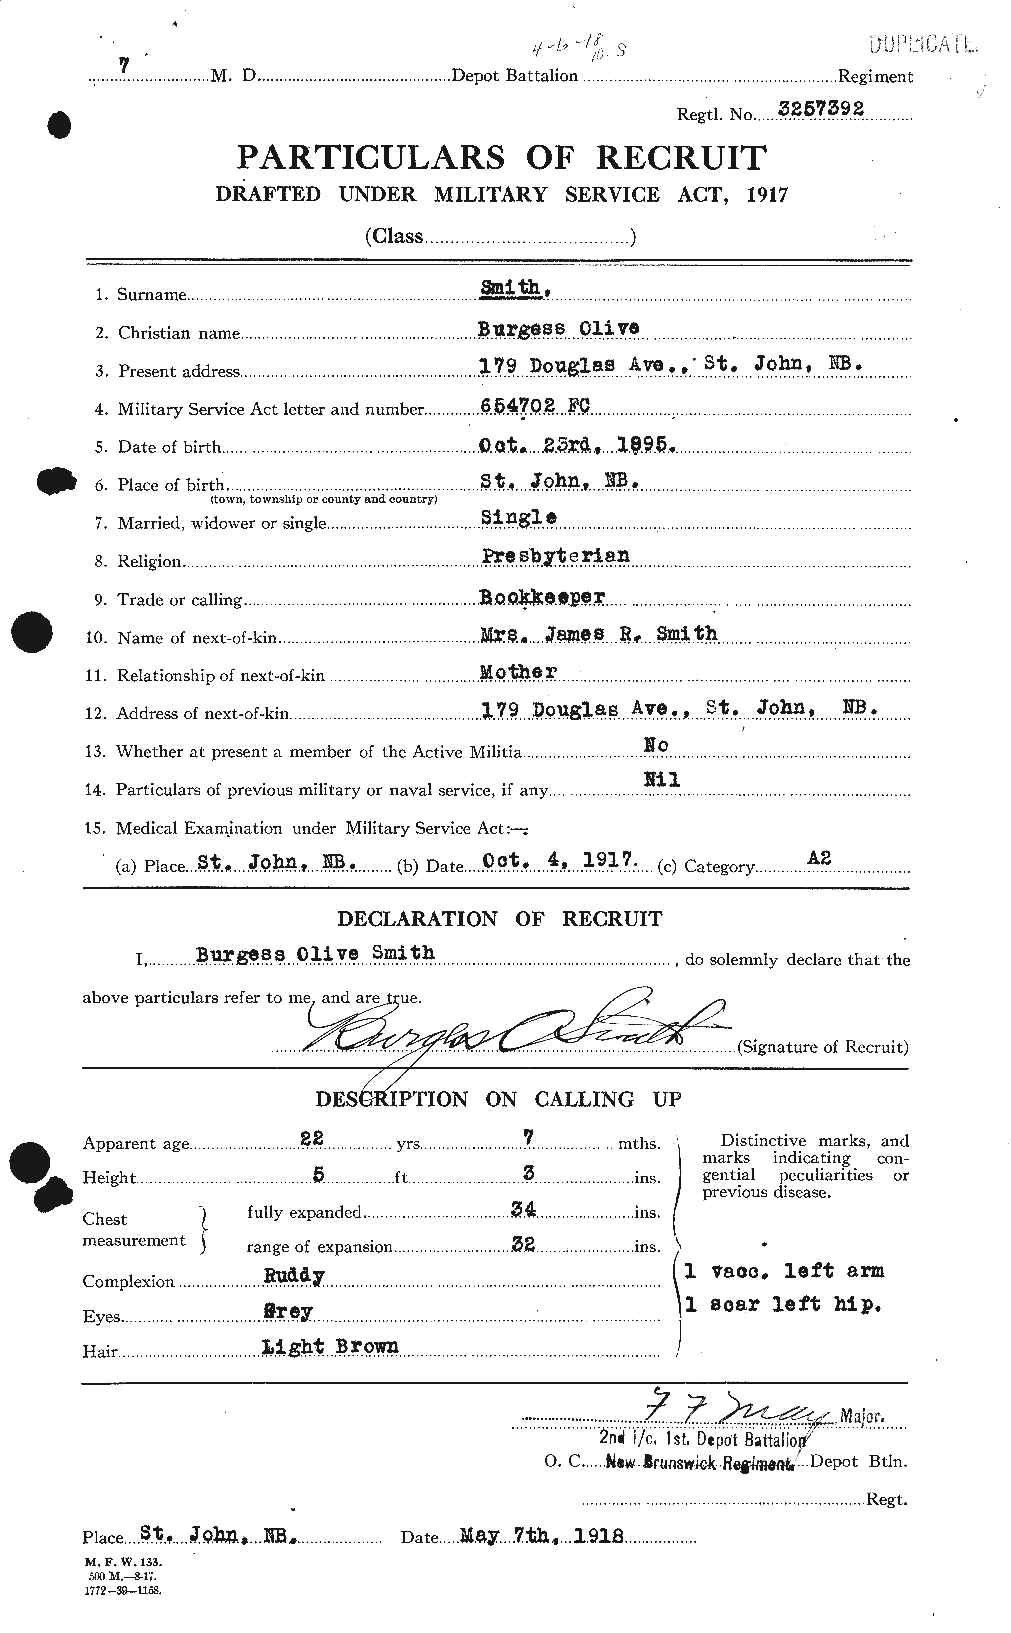 Dossiers du Personnel de la Première Guerre mondiale - CEC 100825a